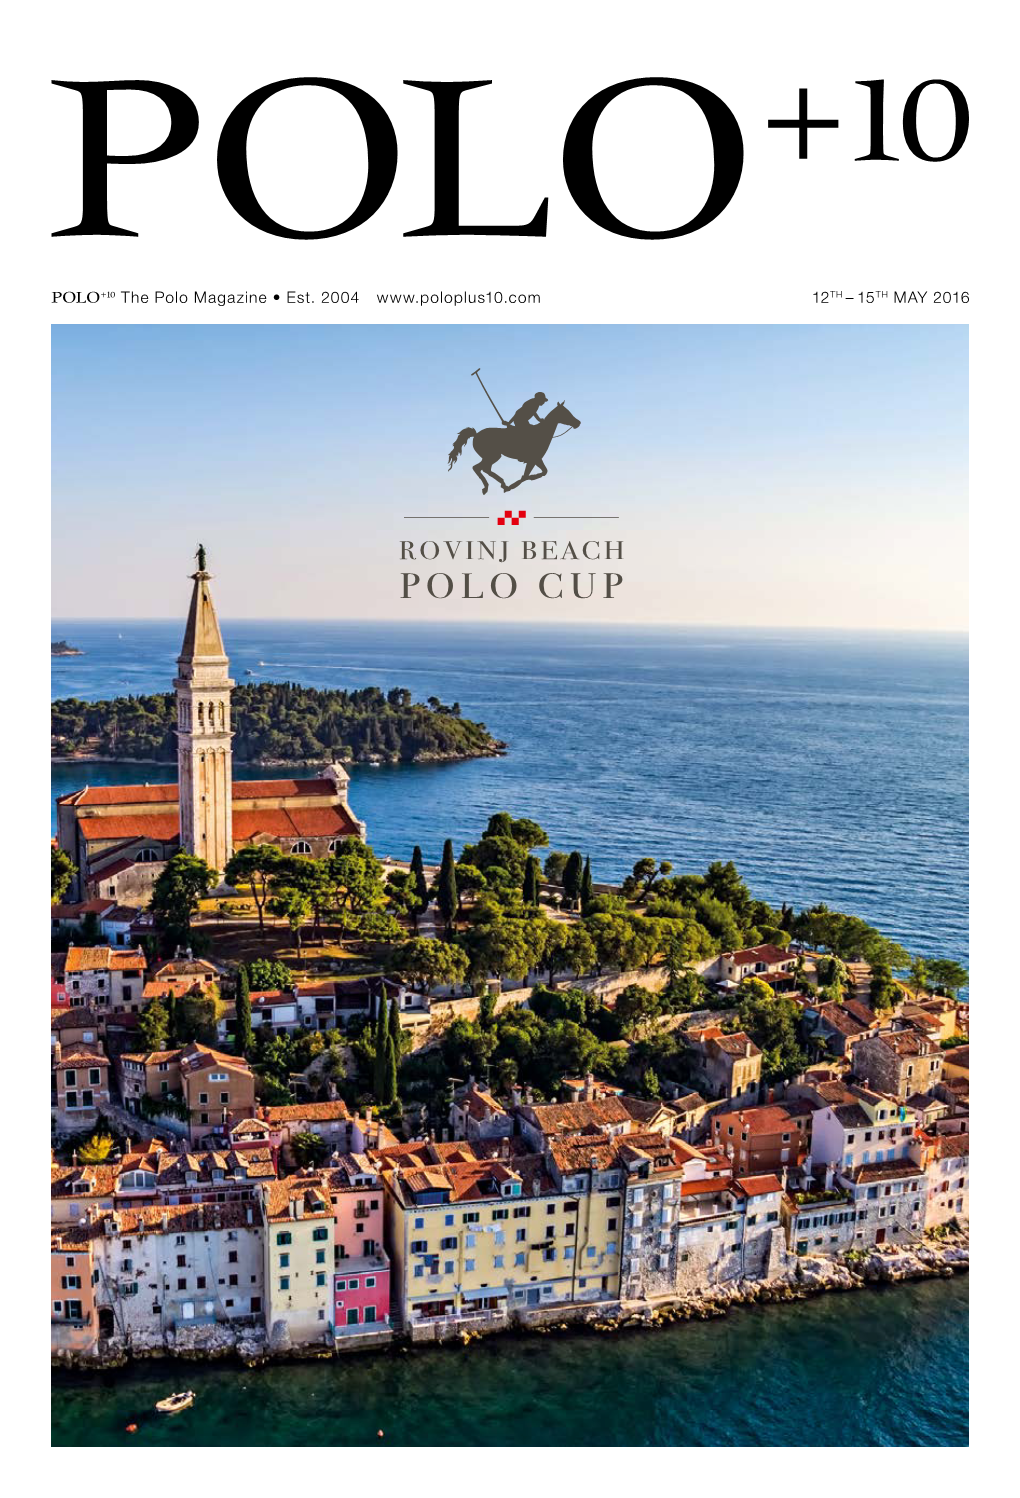 The Polo Magazine • Est. 2004 12TH – 15TH MAY 2016 POLO +10 ROVINJ BEACH POLO CUP 2016 EDITORIAL 3 Image: Croatia Polo Croatia Image